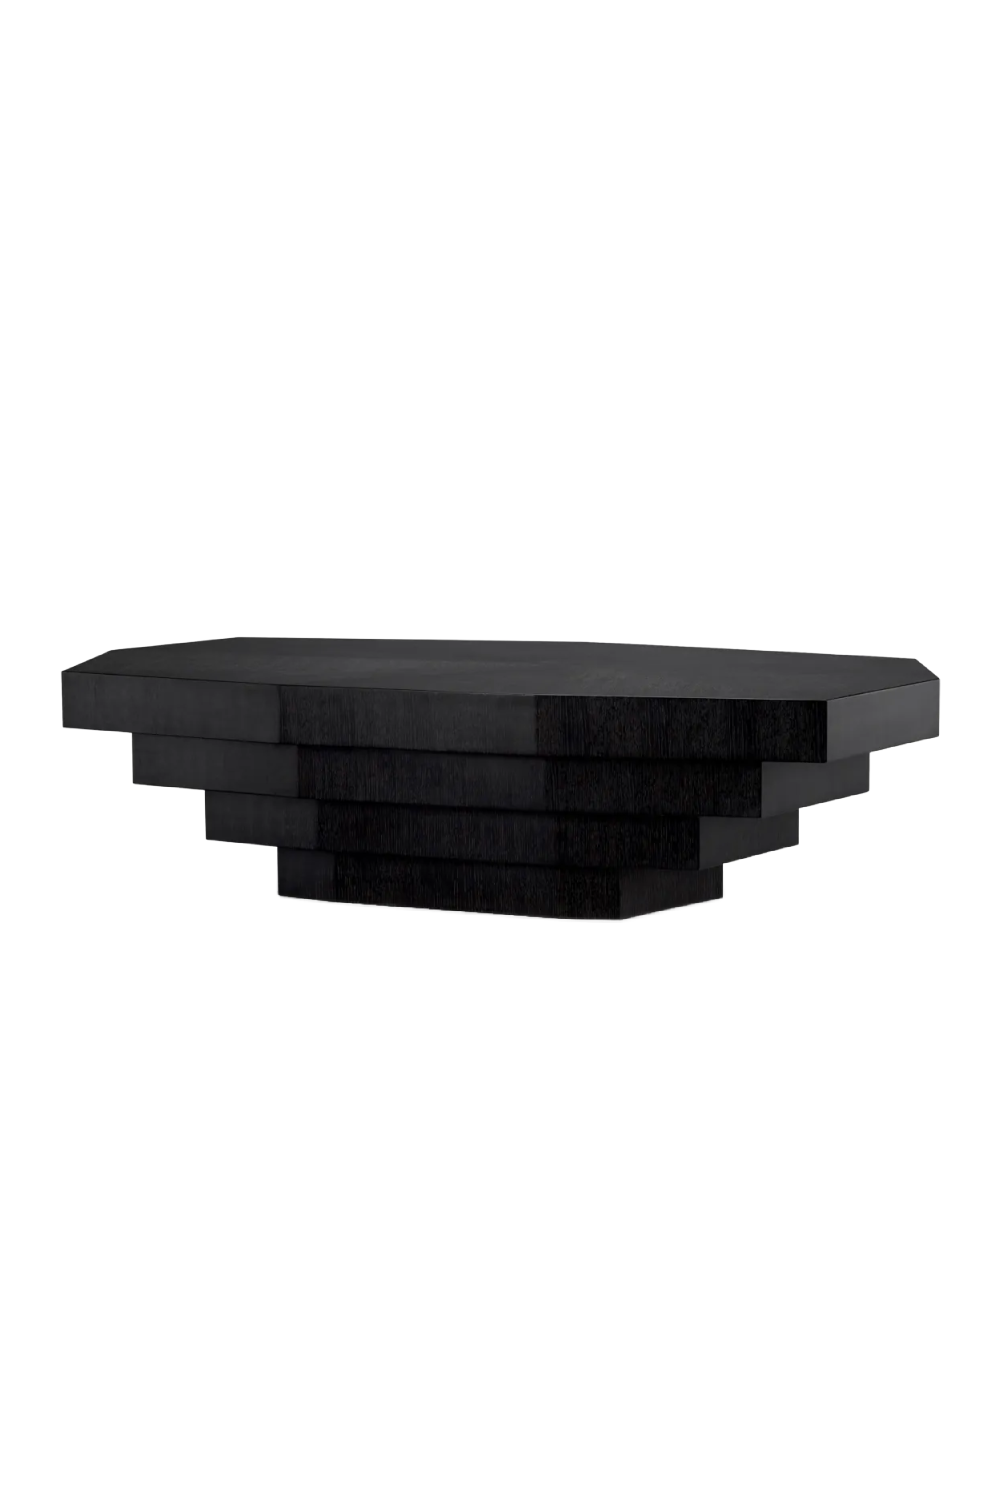 Black Oak Geometrical Coffee Table | Eichholtz Vezio | Oroa.com